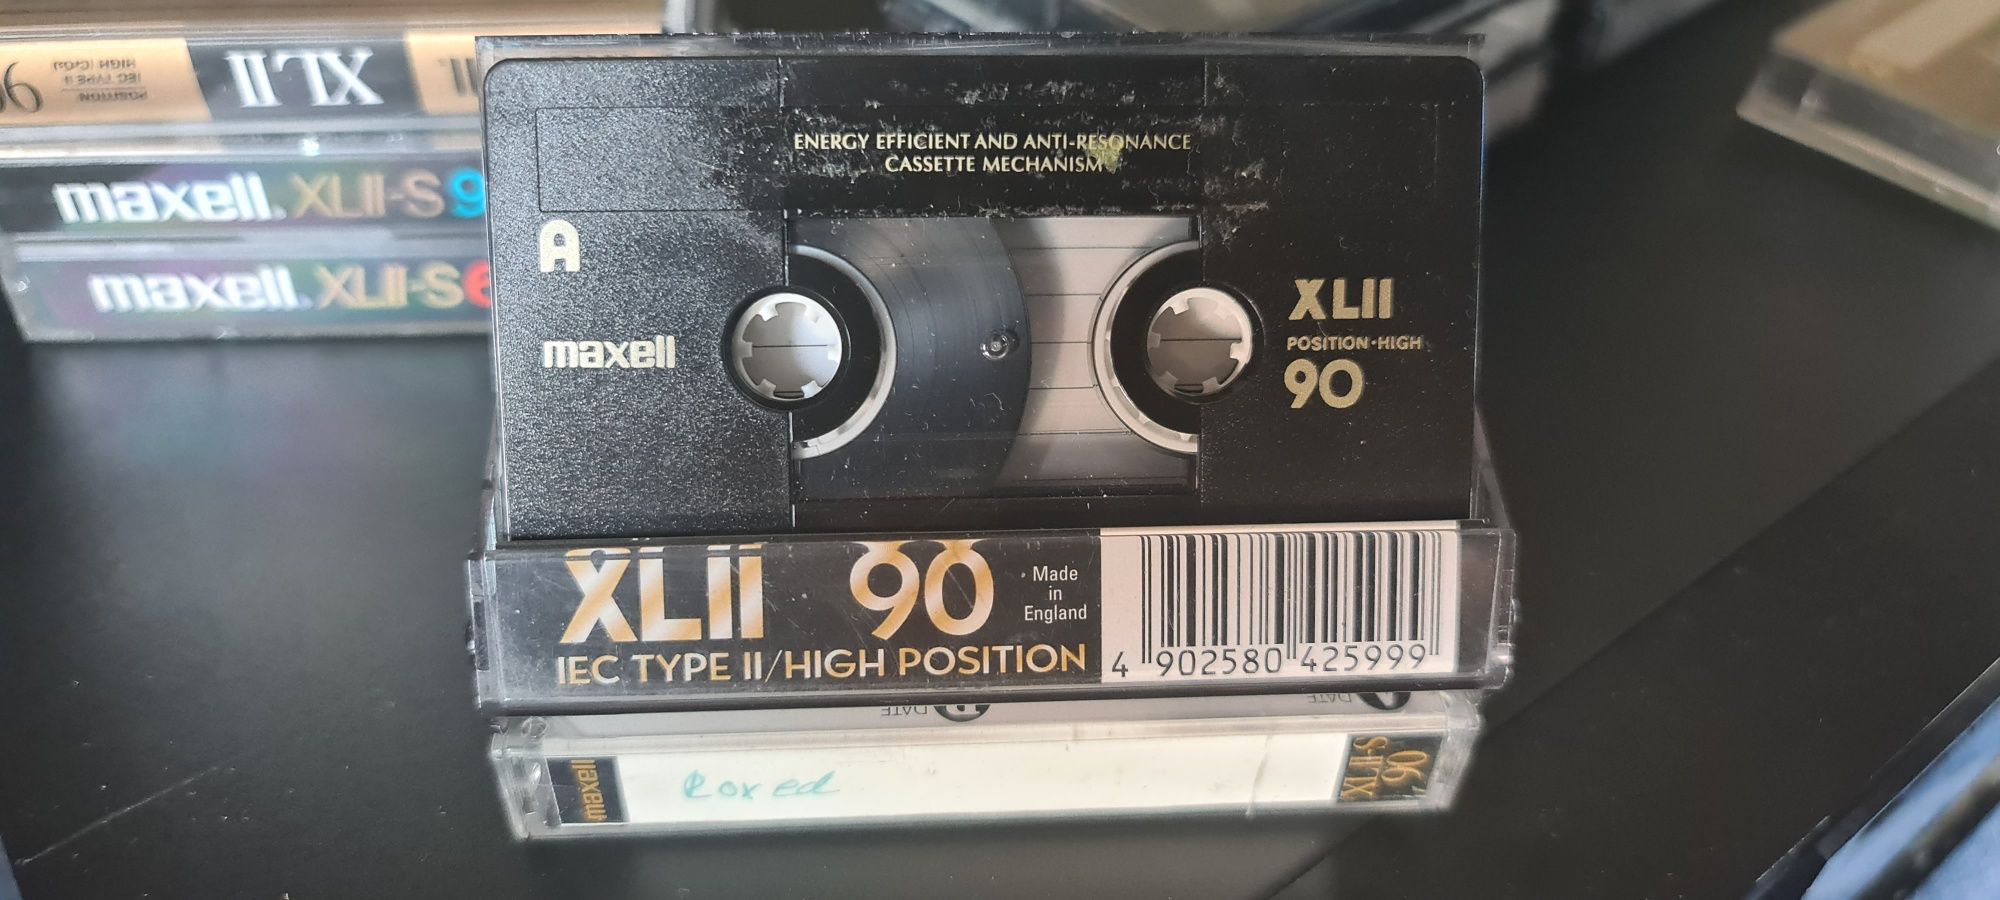 Kaseta magnetofonowa MAXELL XL II